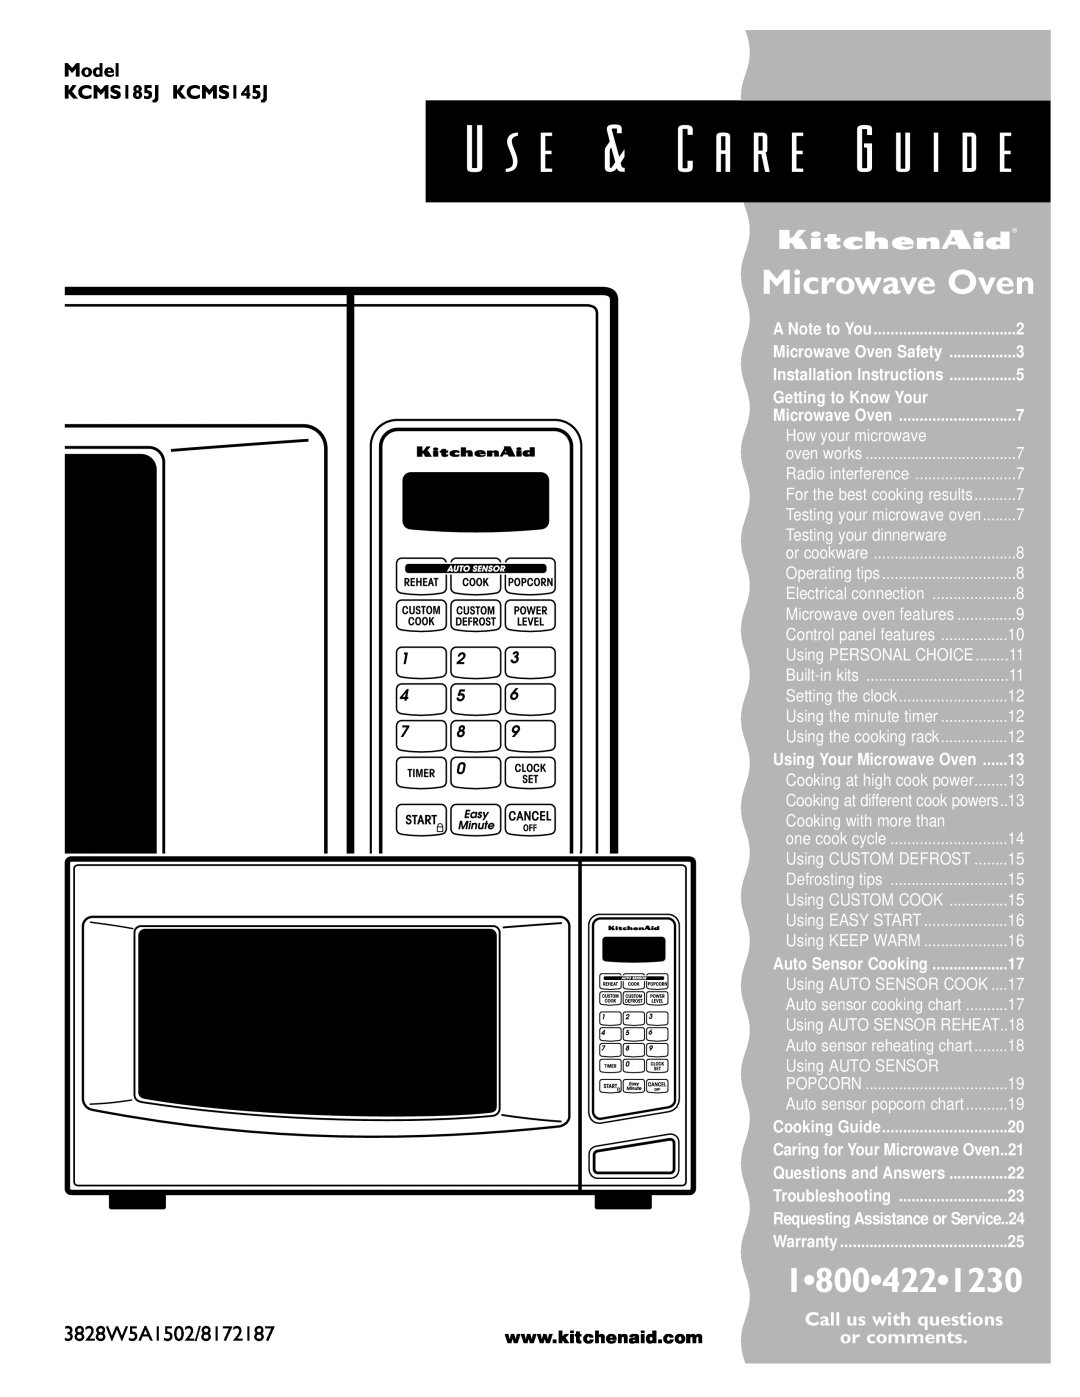 KitchenAid KCMS185JBK, KCMS145JBT installation instructions U s e & C a r e G u i d e, Microwave Oven, 3828W5A1502/8172187 